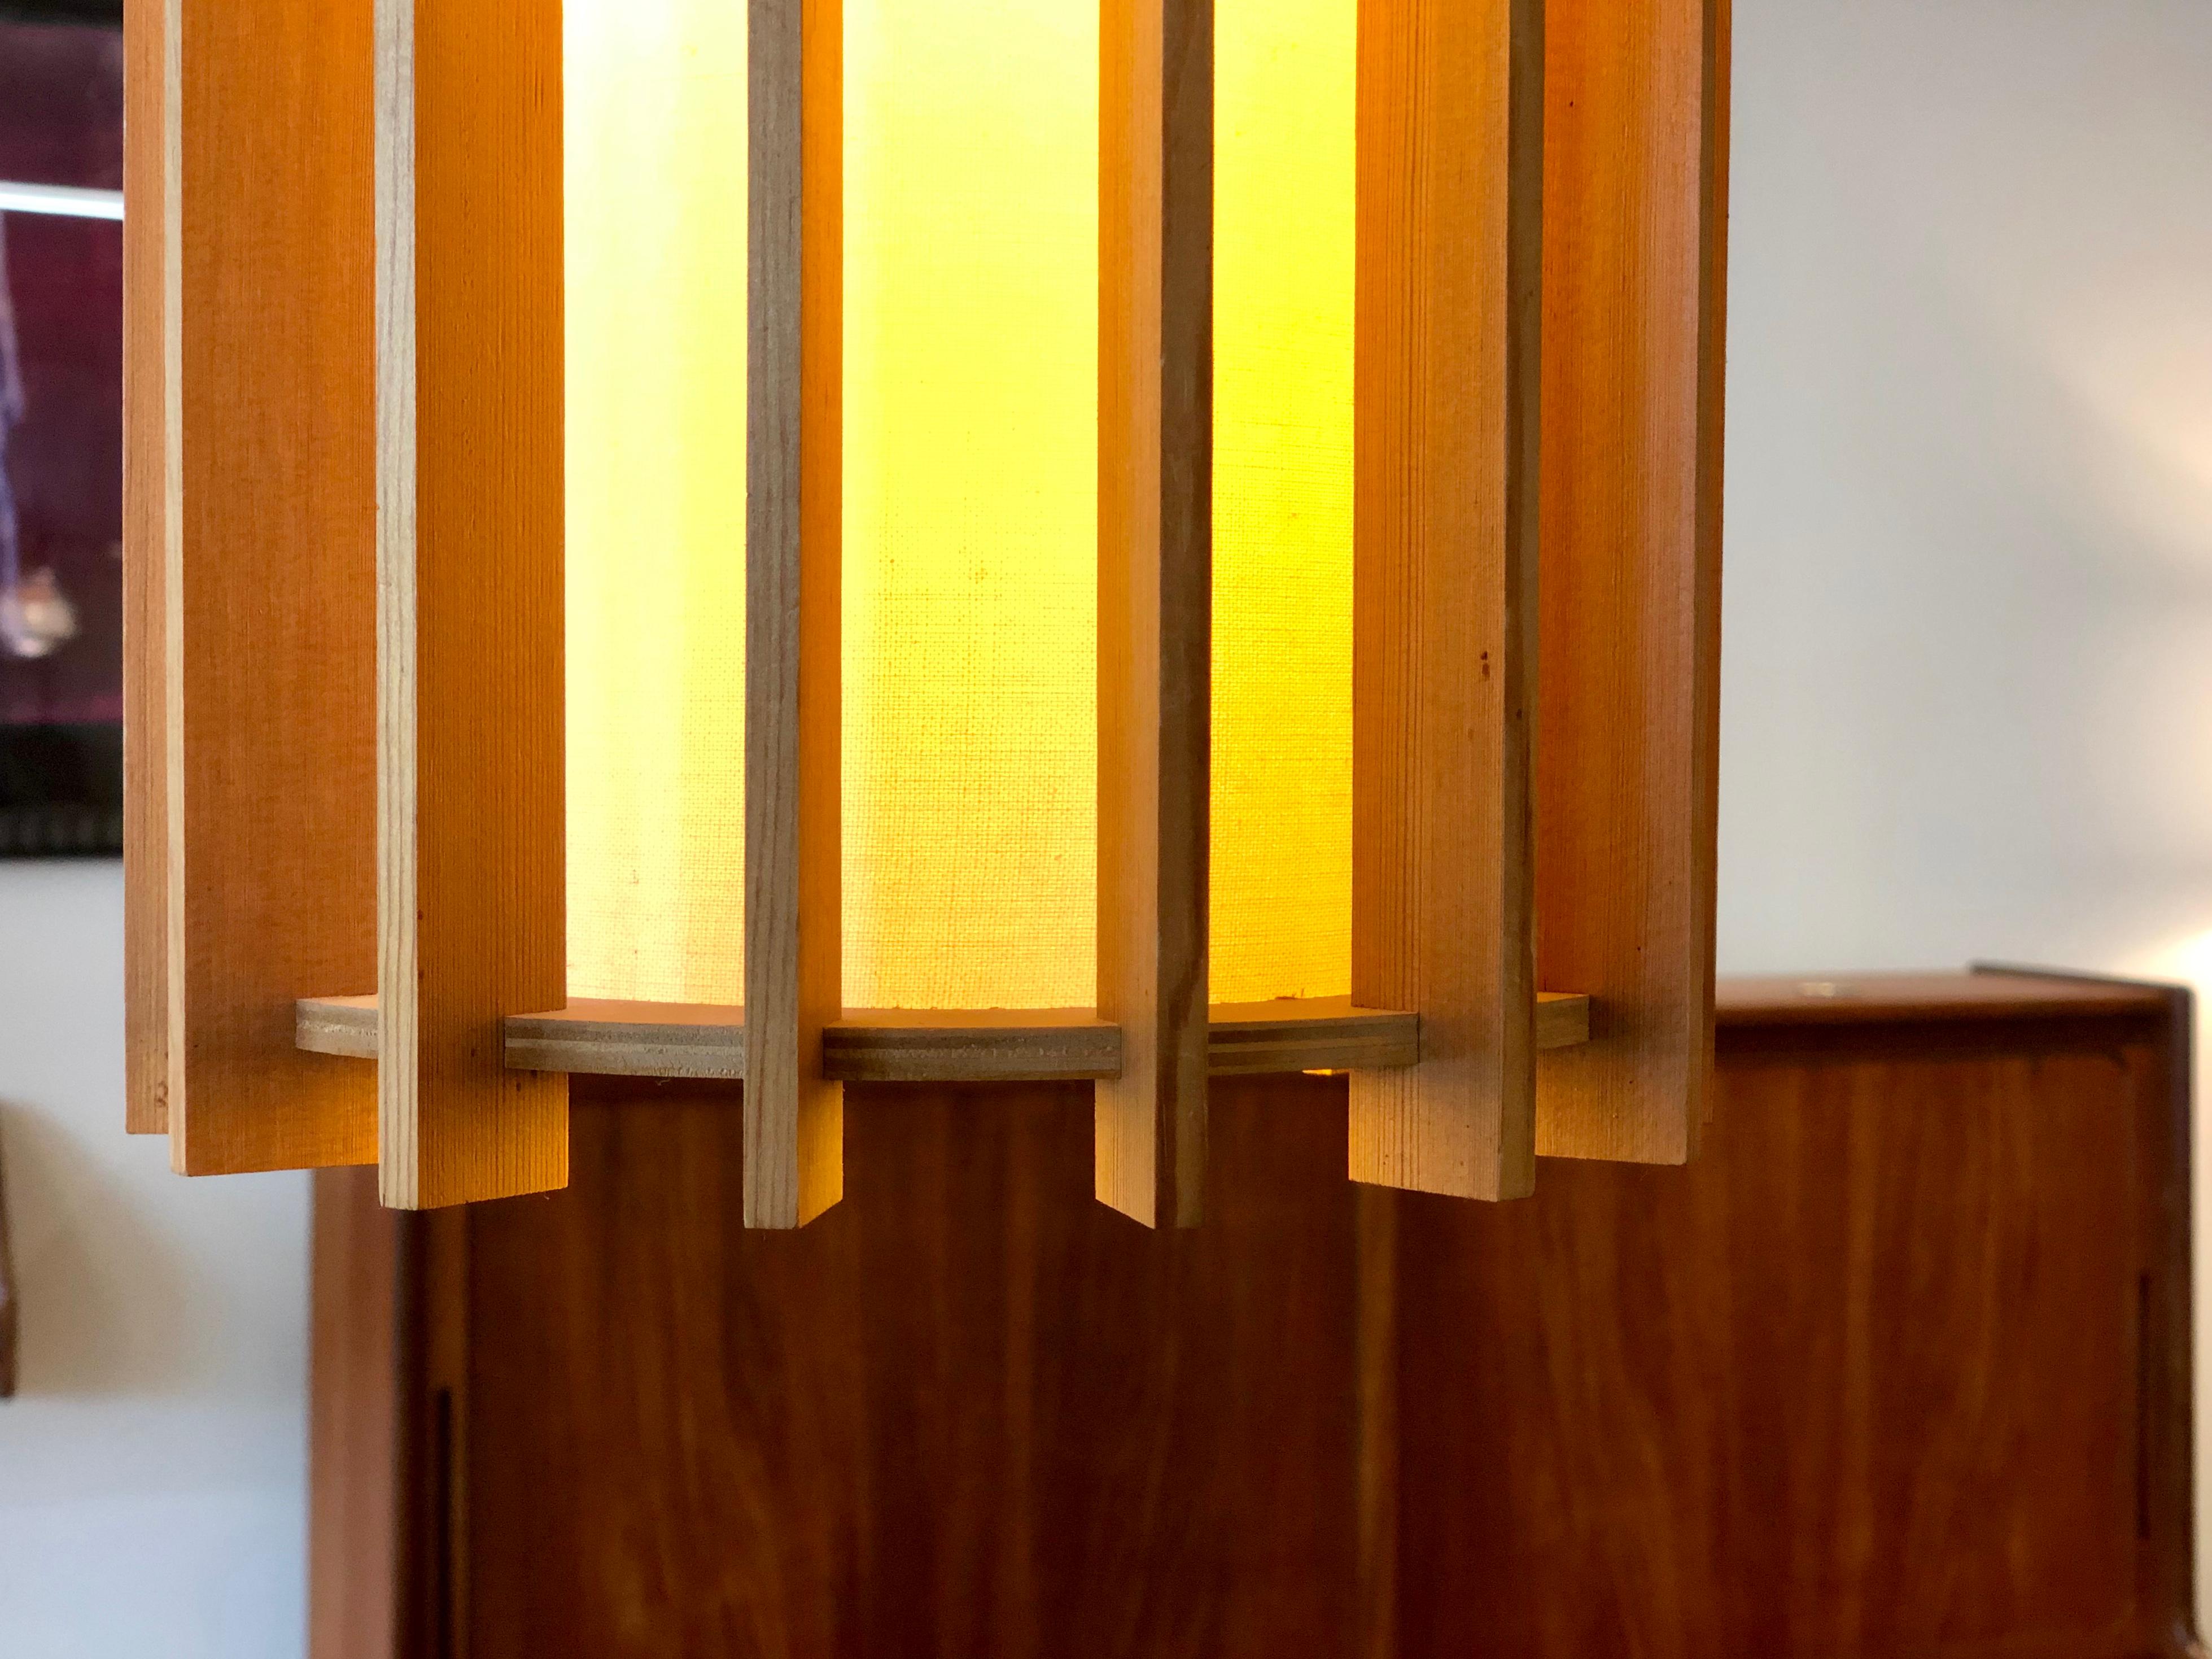 Oiled Danish Modern Pendant Light Fixture with Fir Slats